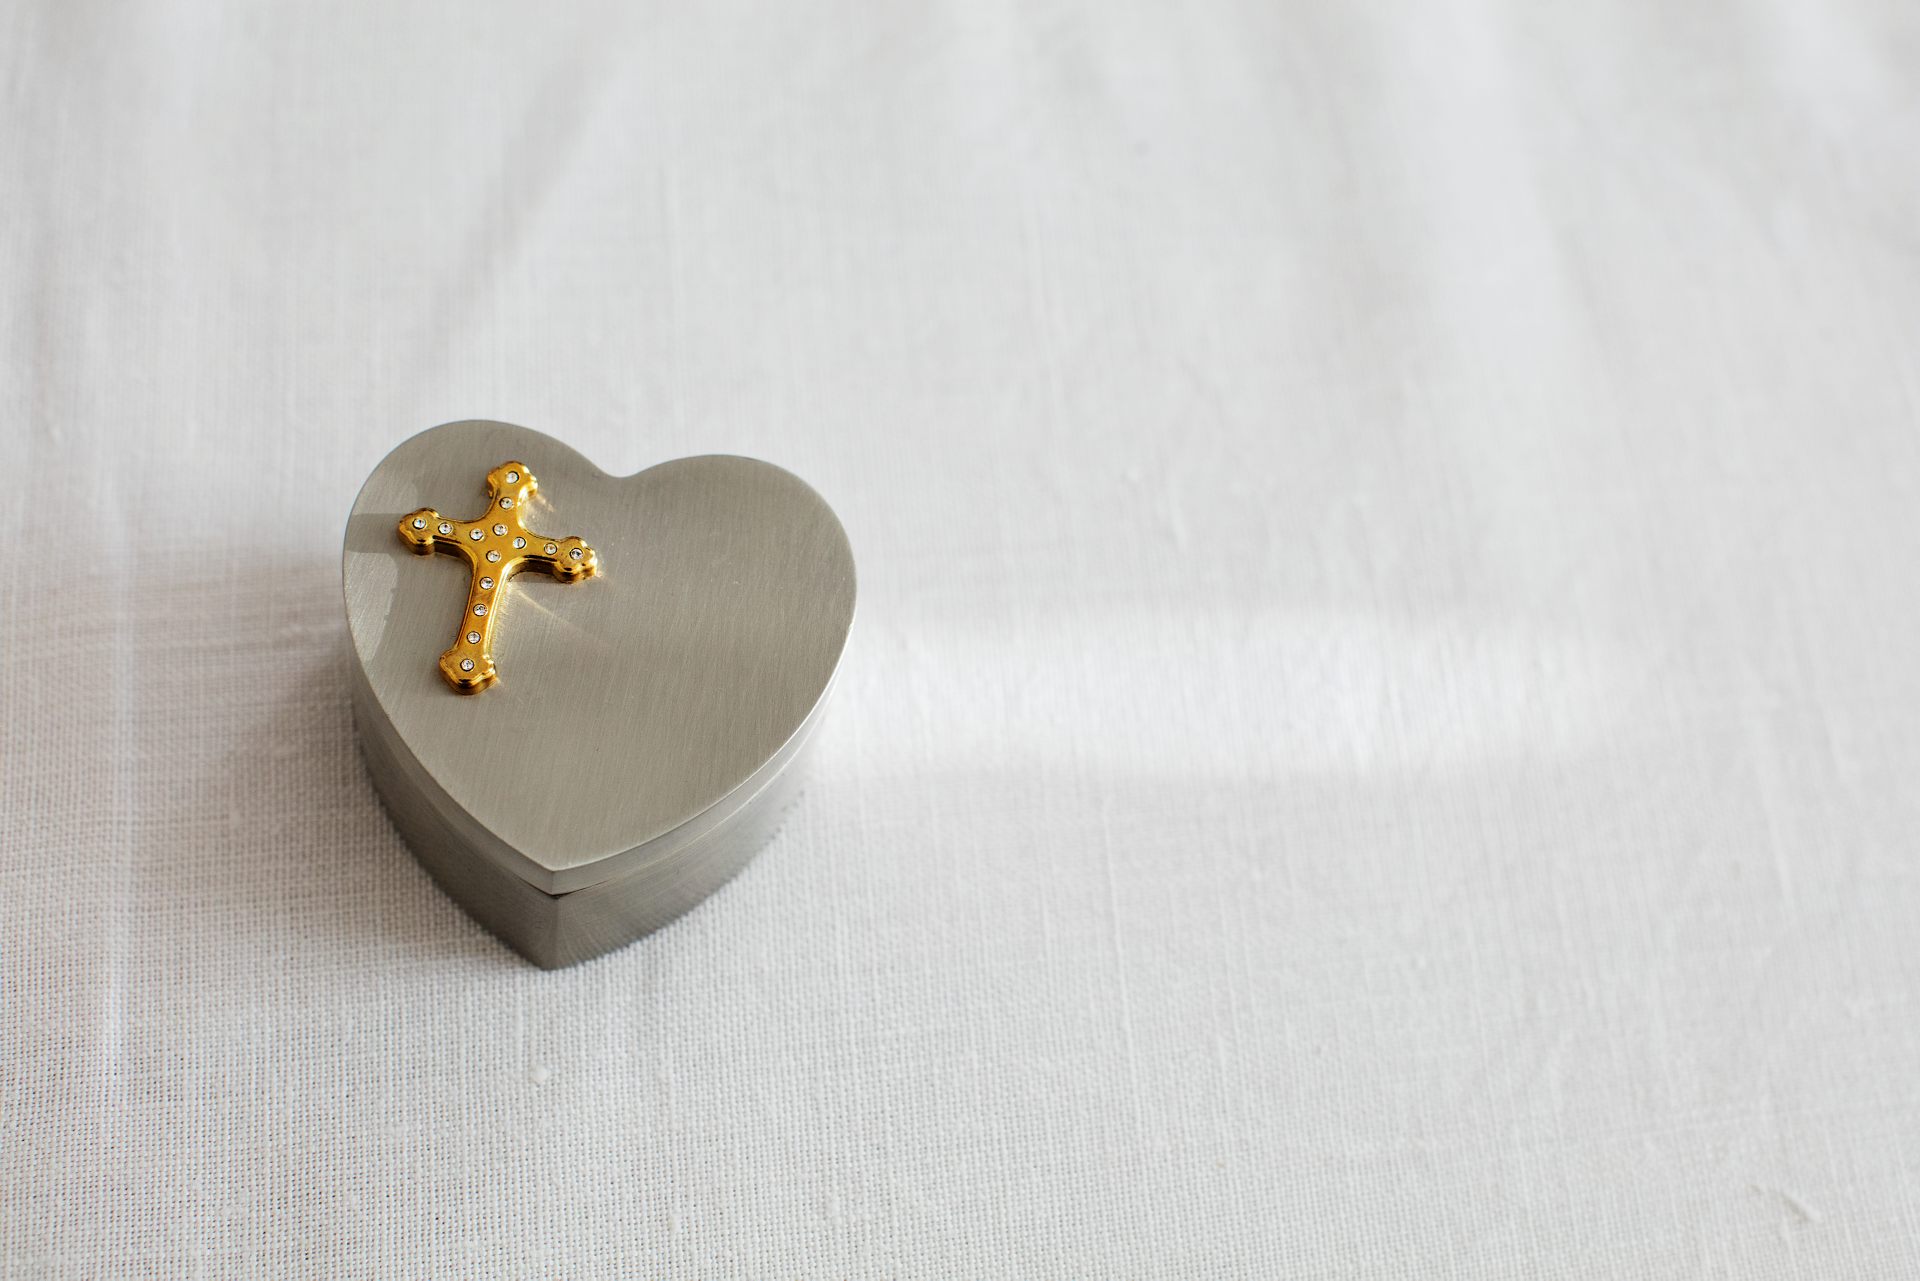 En silvrig ask format som ett hjärta och dekorerat med ett kors ovanpå.